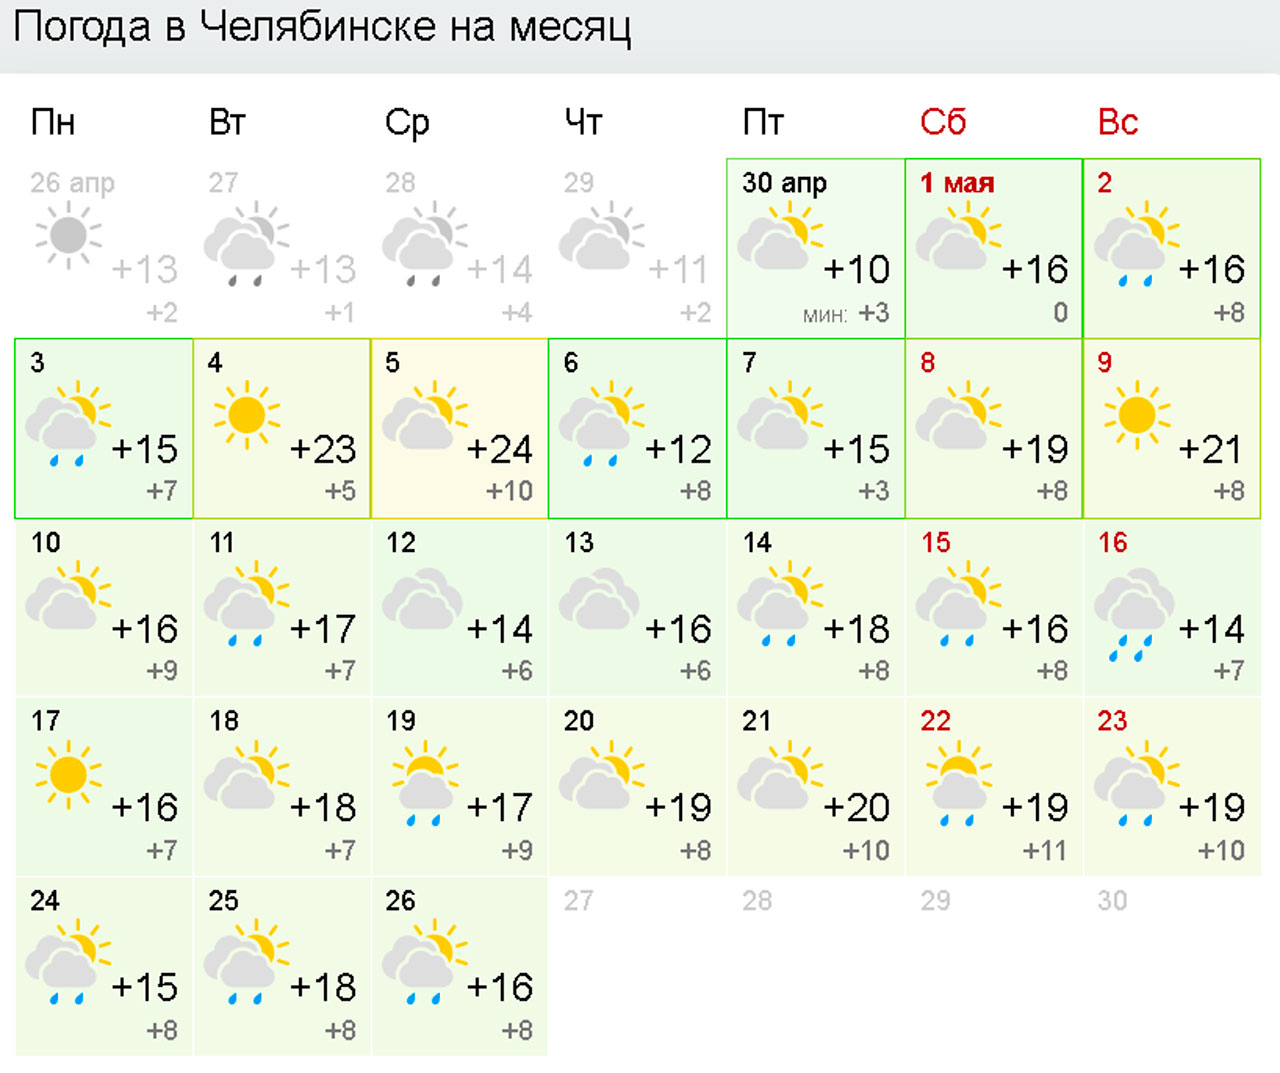 Точный прогноз погоды в магнитогорске на месяц. Погода в Магнитогорске. Погода в Челябинске на 10 дней. Май Челябинск. Прогноз погоды в Магнитогорске.